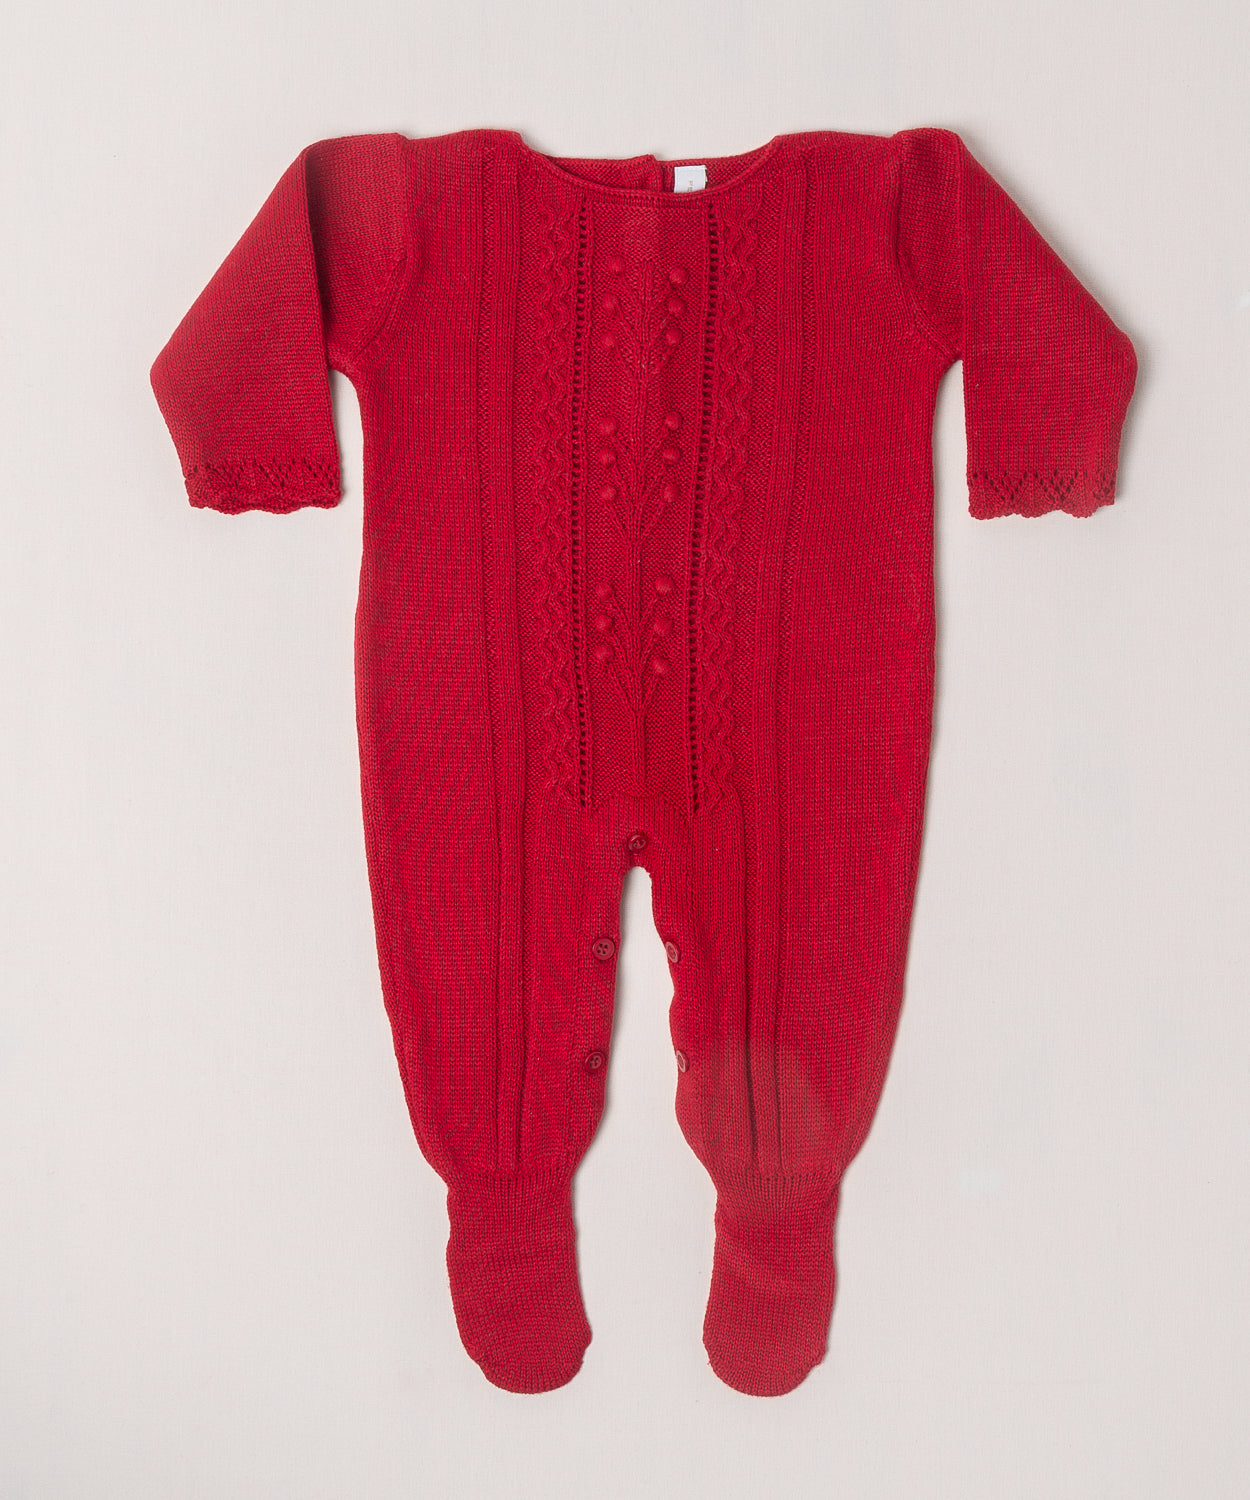 O macacão em tricô vermelho é encantador, com uma trama delicada que chama a atenção. Ele é prático para a troca da bebê, com abotoamento nas entrepernas e costas, facilitando a troca sem perder o charme.